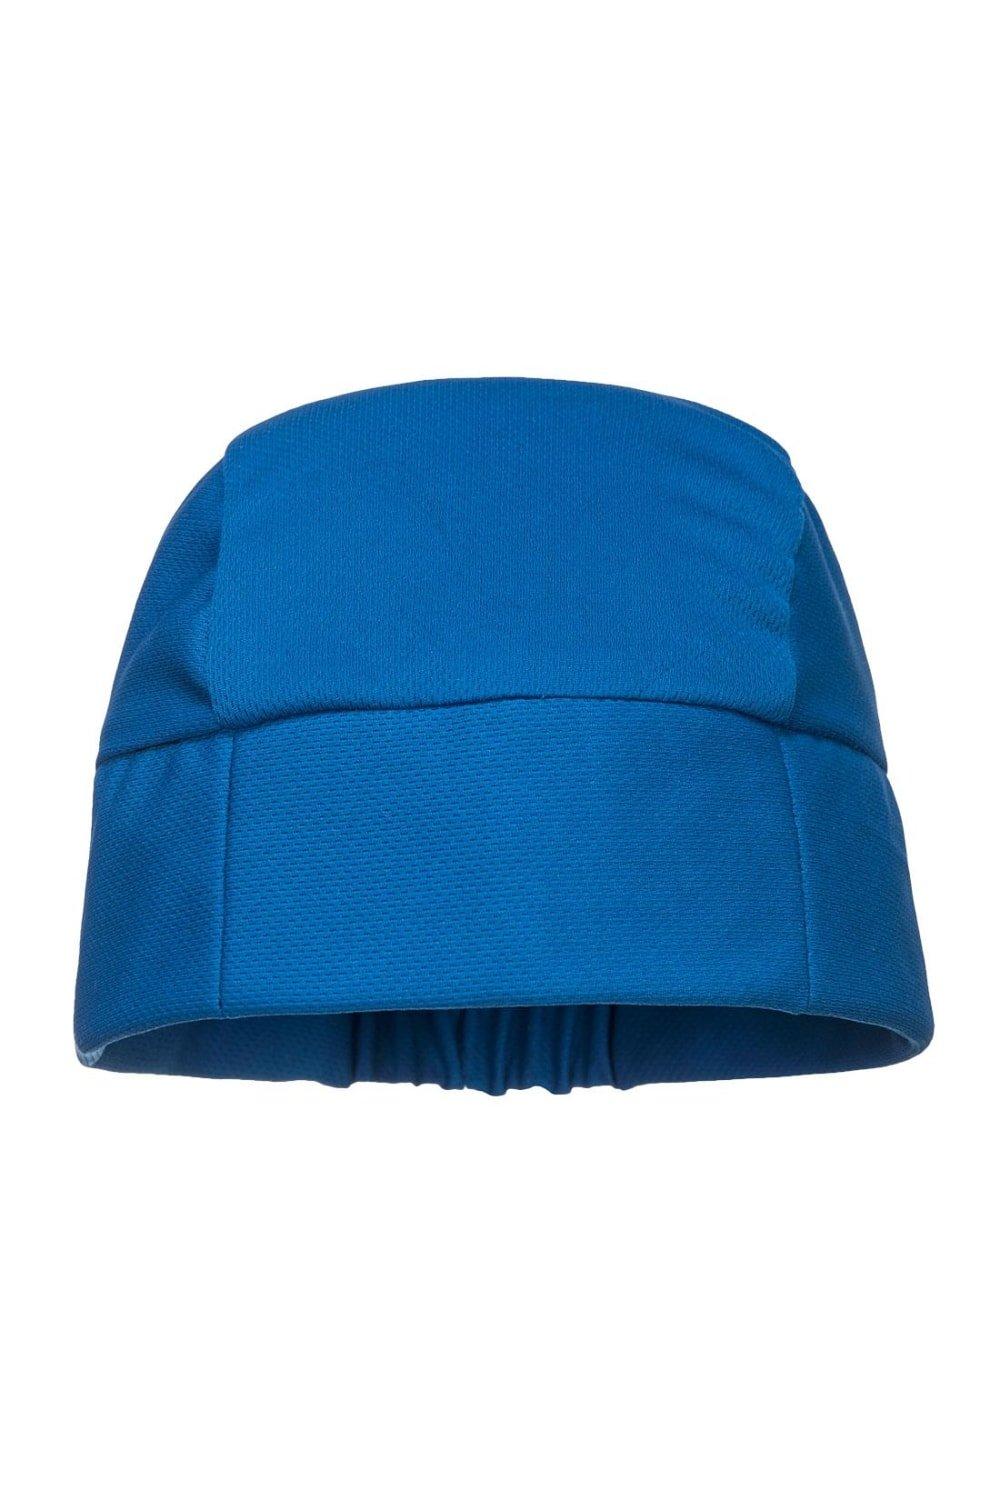 Охлаждающая шапка Portwest, синий илюхина г птичий февраль